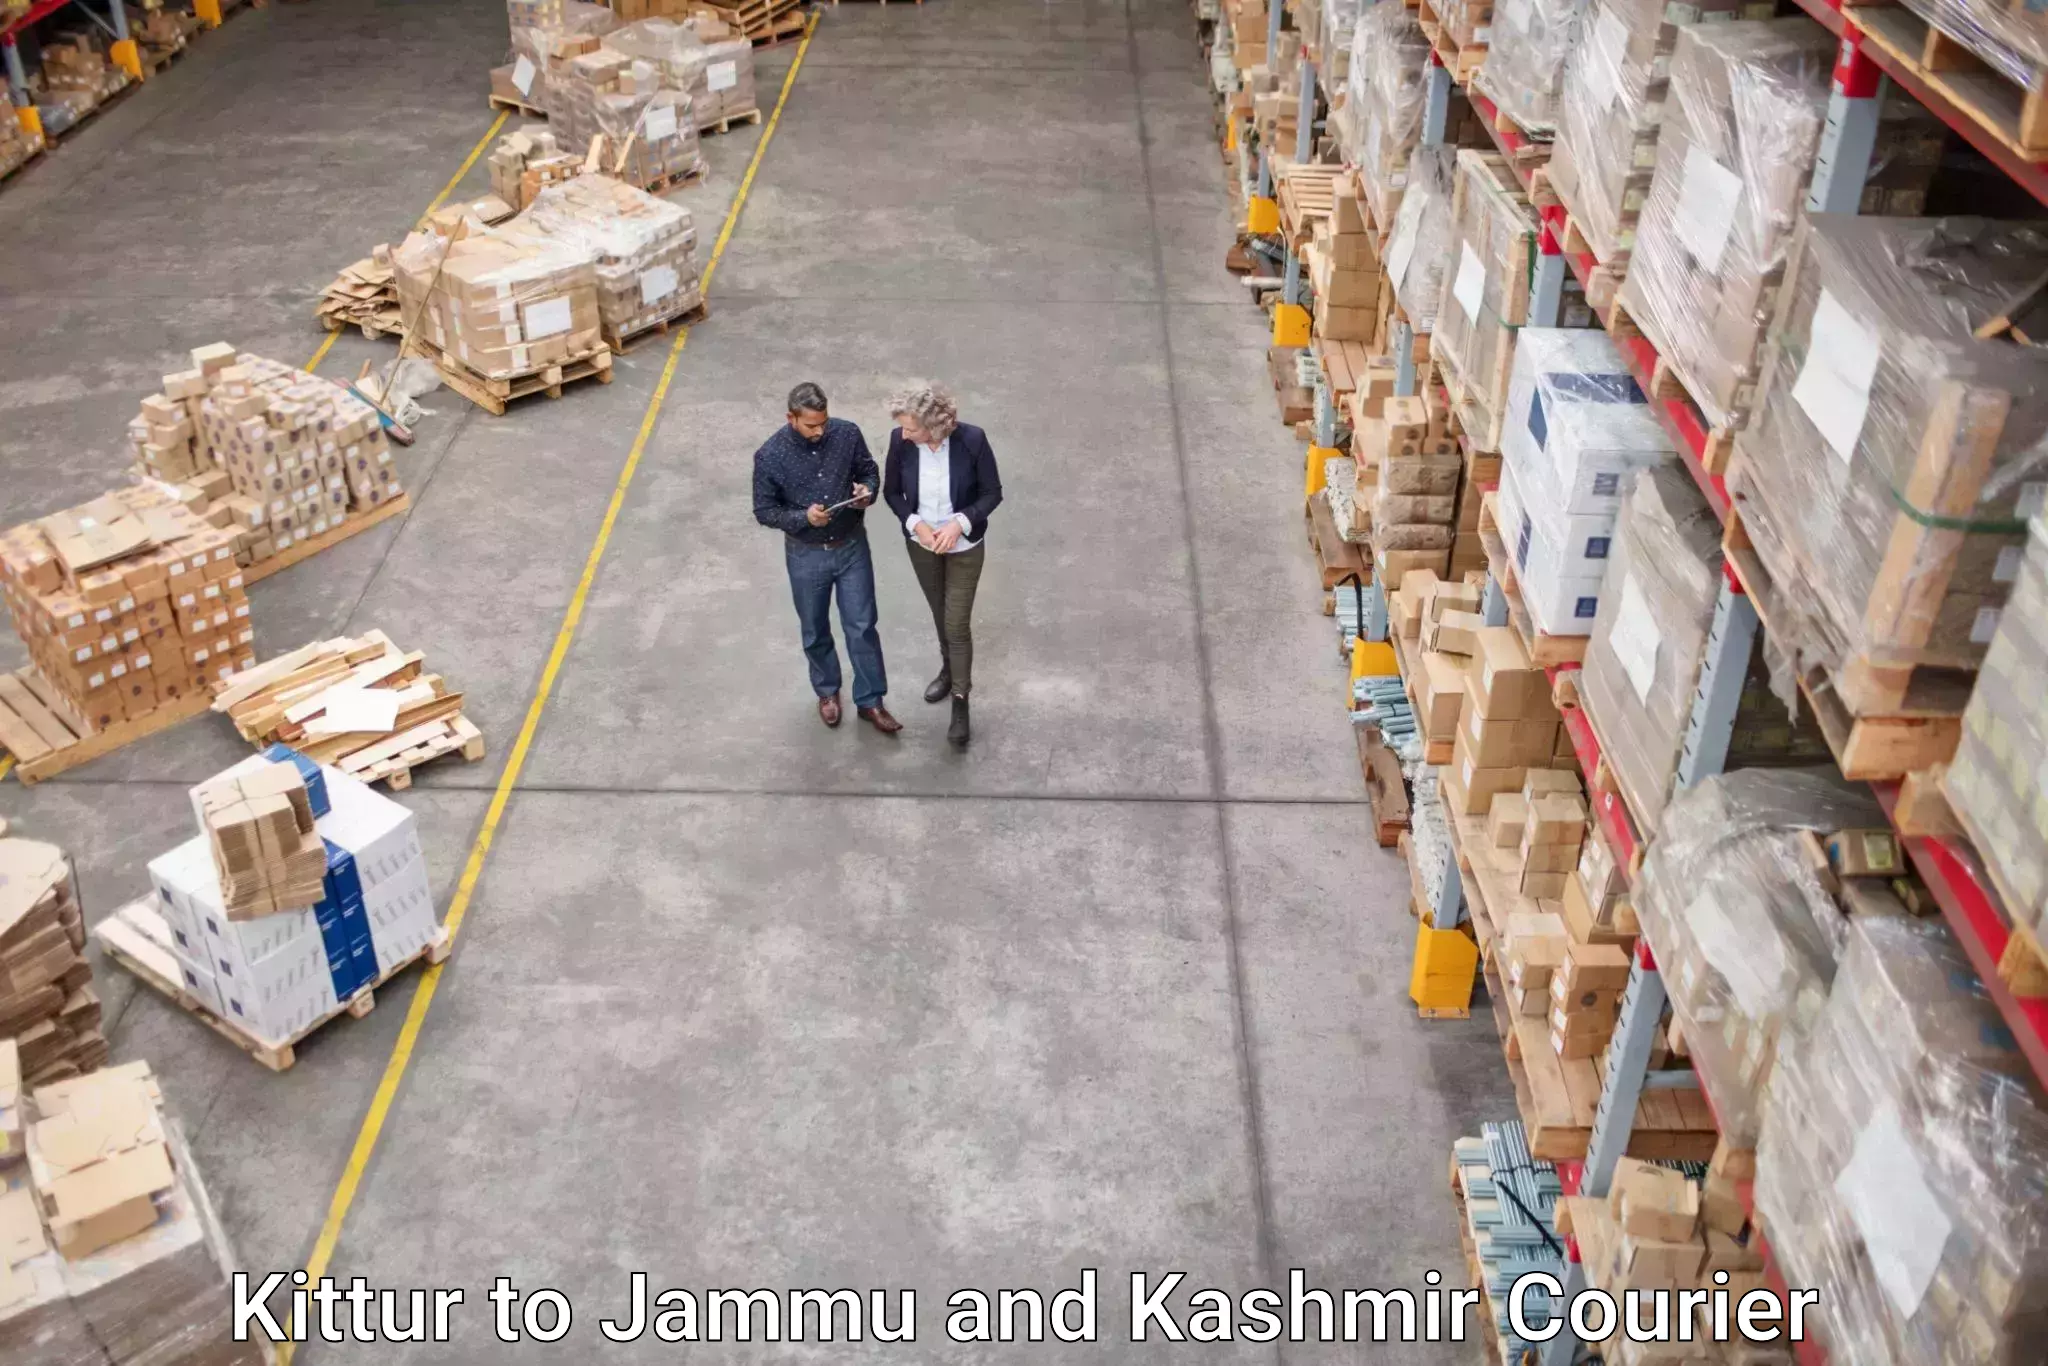 Global shipping solutions Kittur to Kishtwar